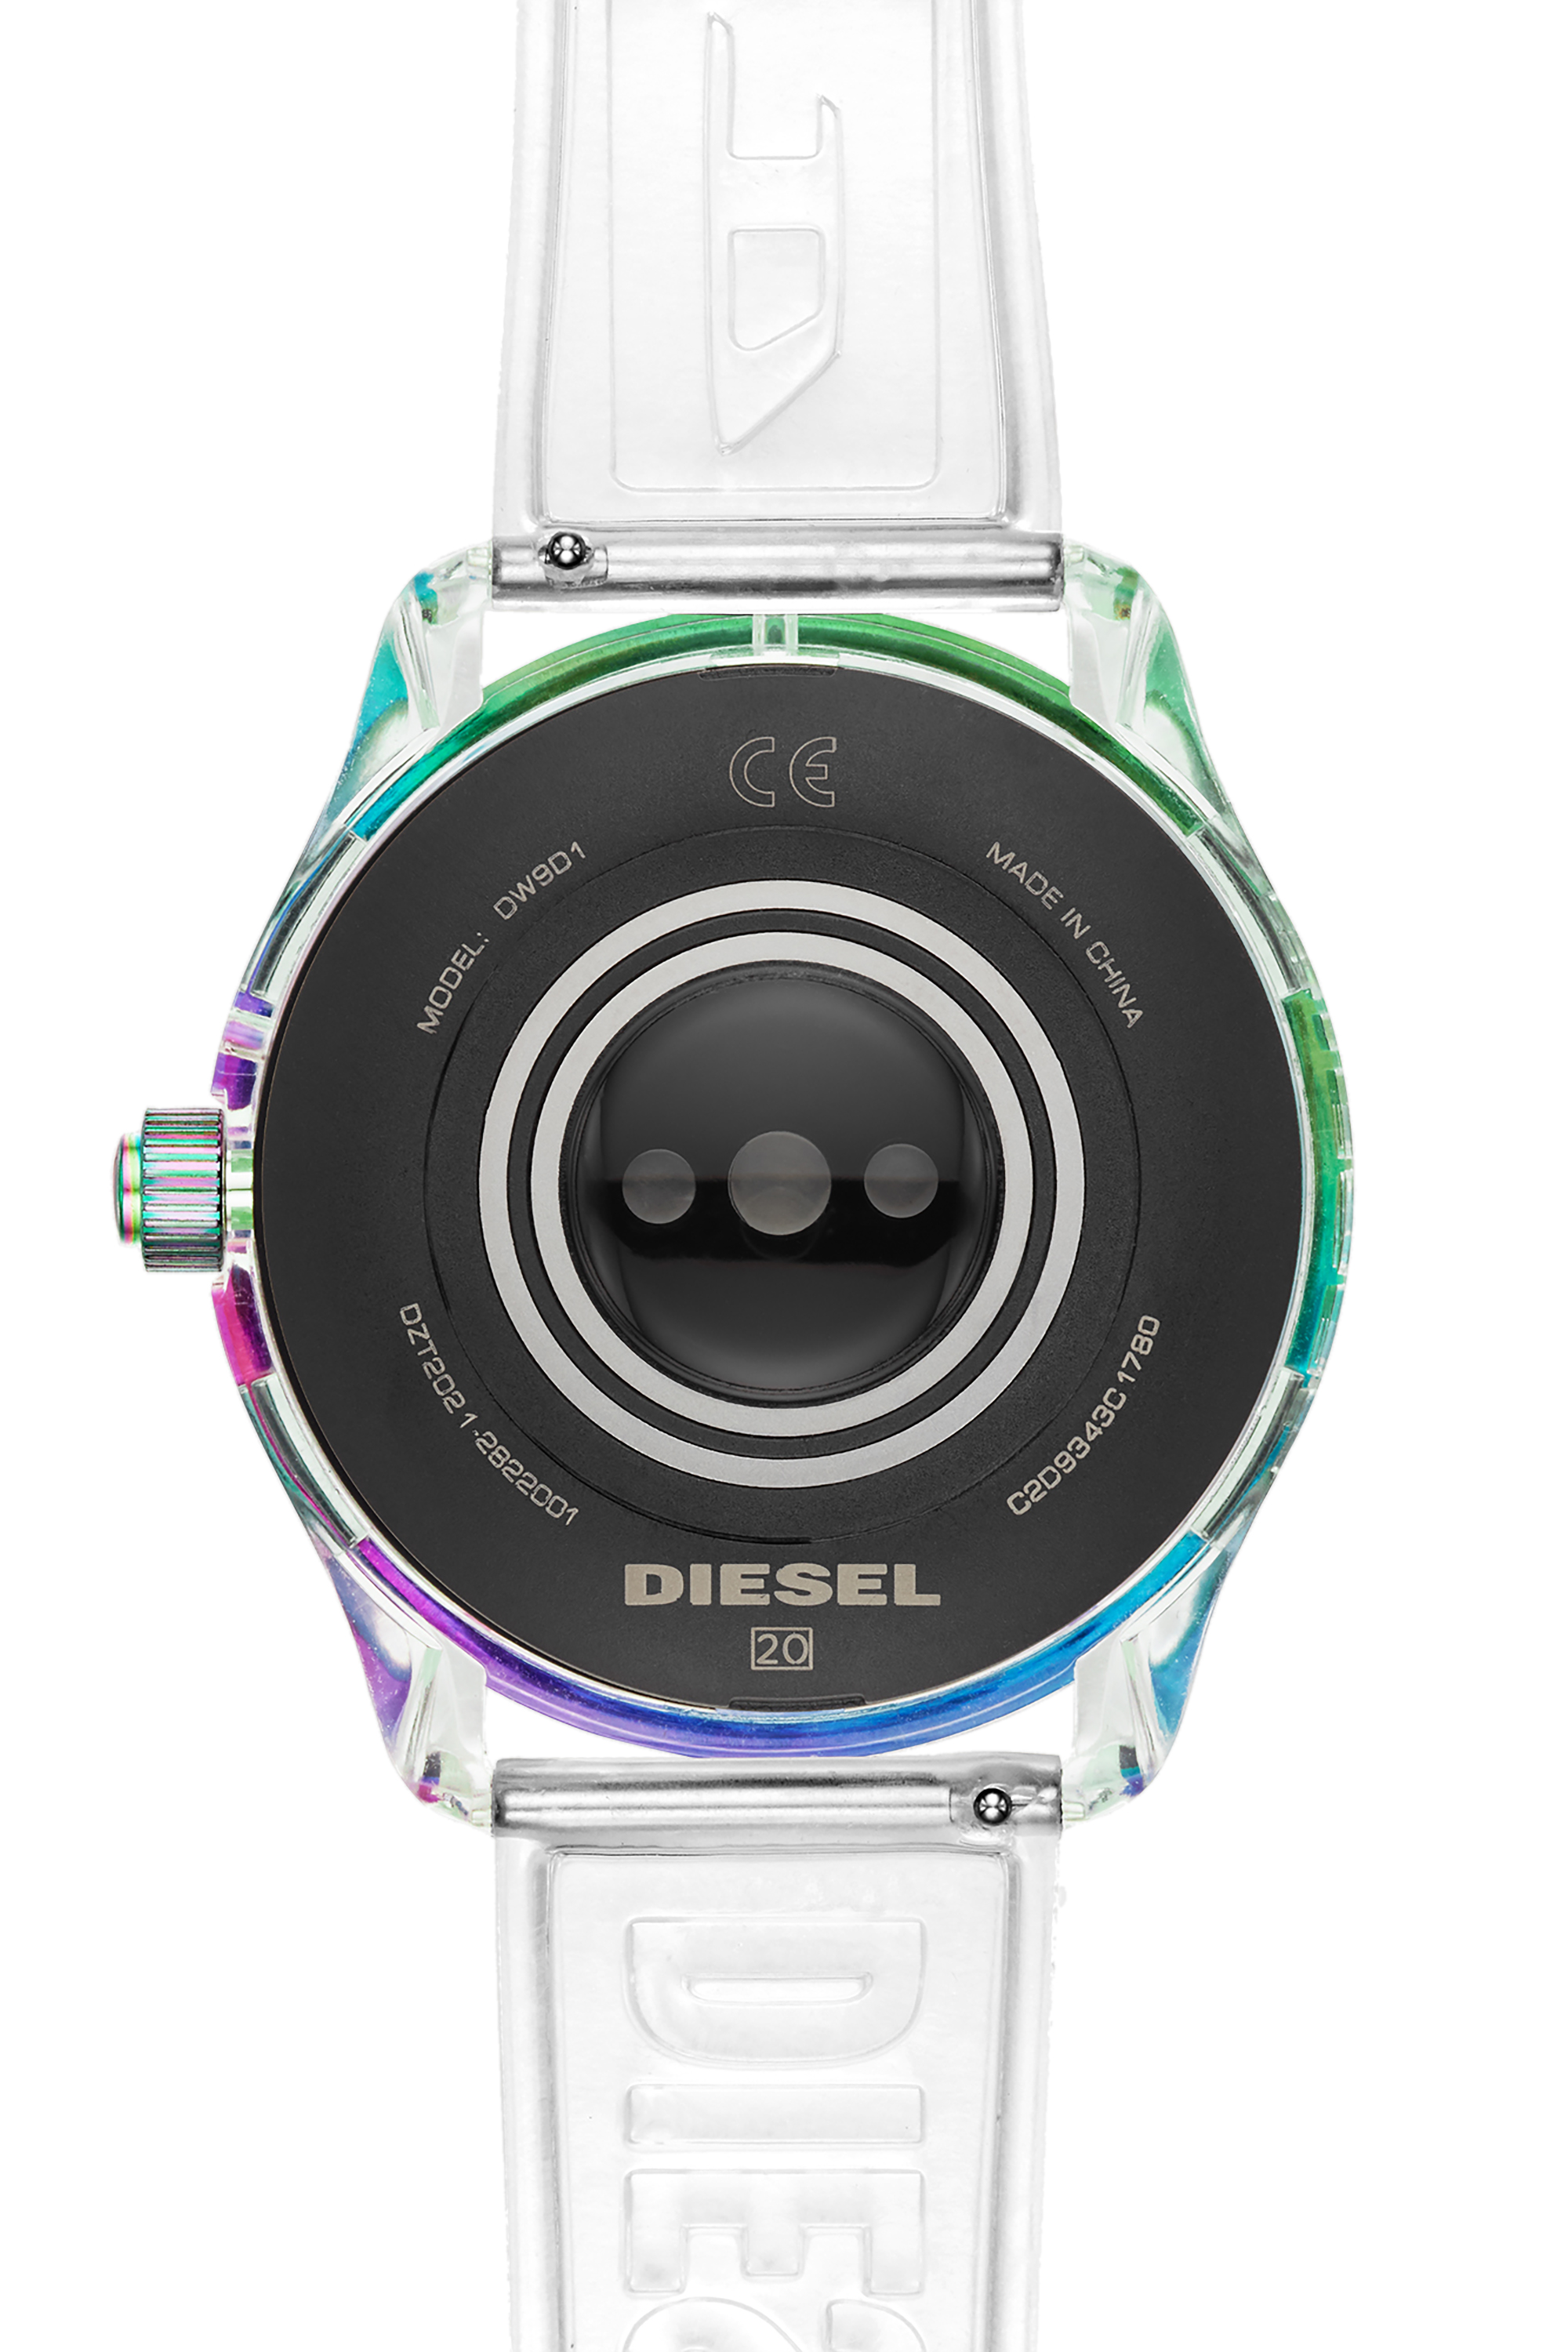 Diesel - DT2021, Blanc - Image 4